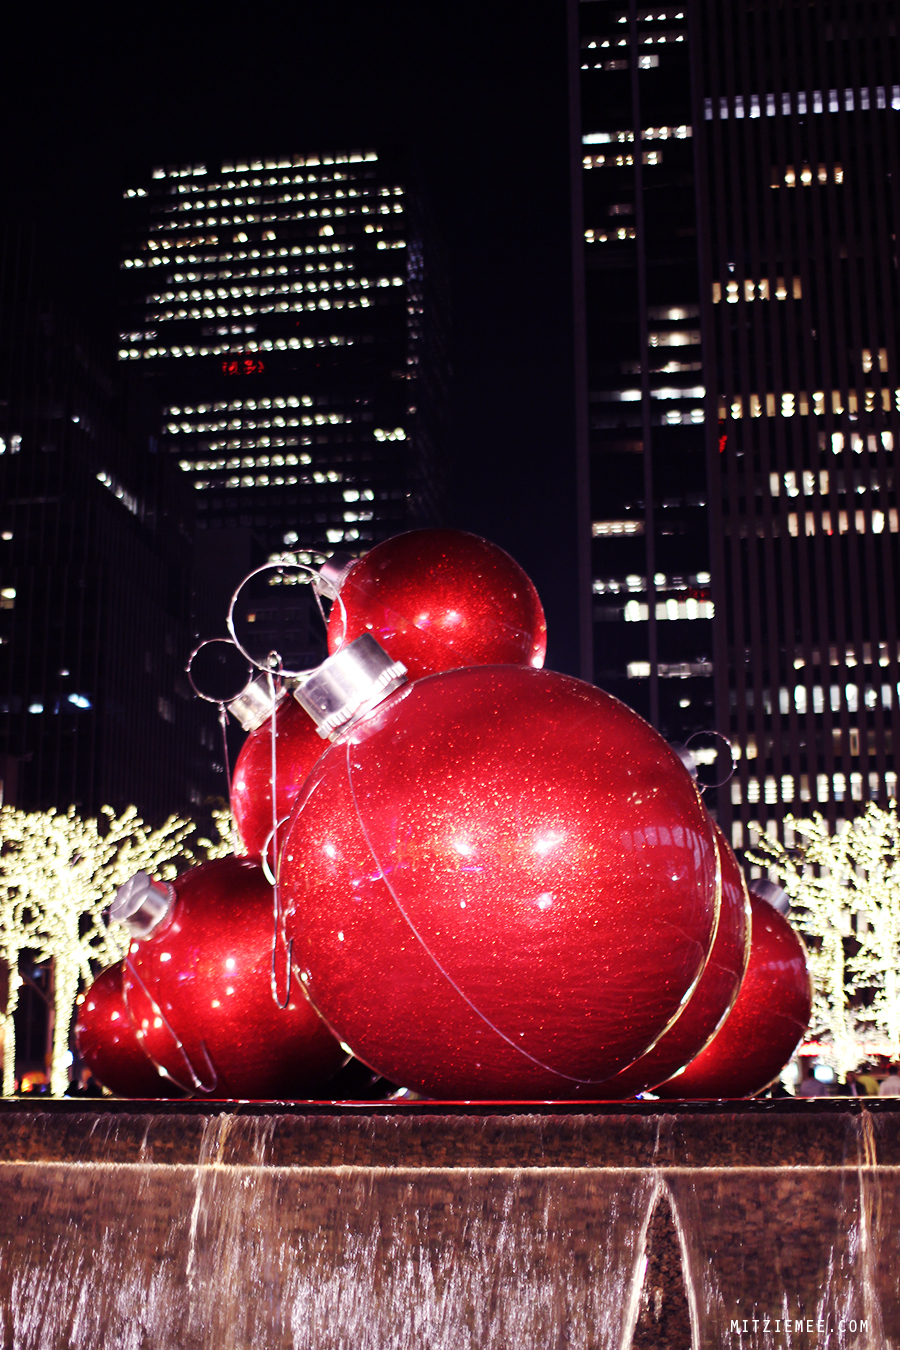 Julepynt på 6th Avenue, New York